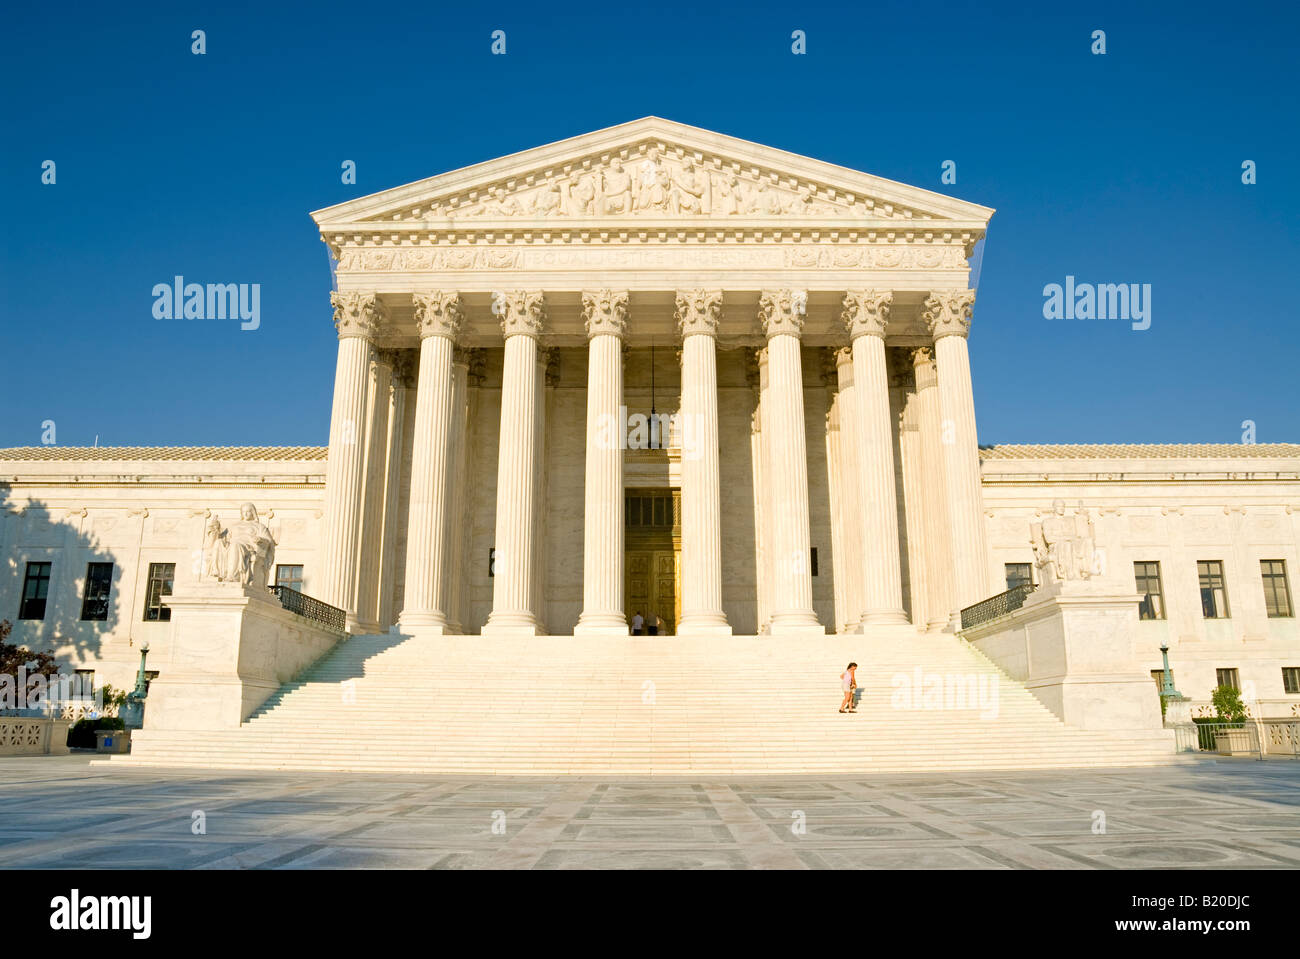 WASHINGTON DC, Stati Uniti d'America - La parte anteriore dell'edificio, che si affaccia a ovest, della Corte suprema degli Stati Uniti sul Campidoglio di Washington DC. Foto Stock